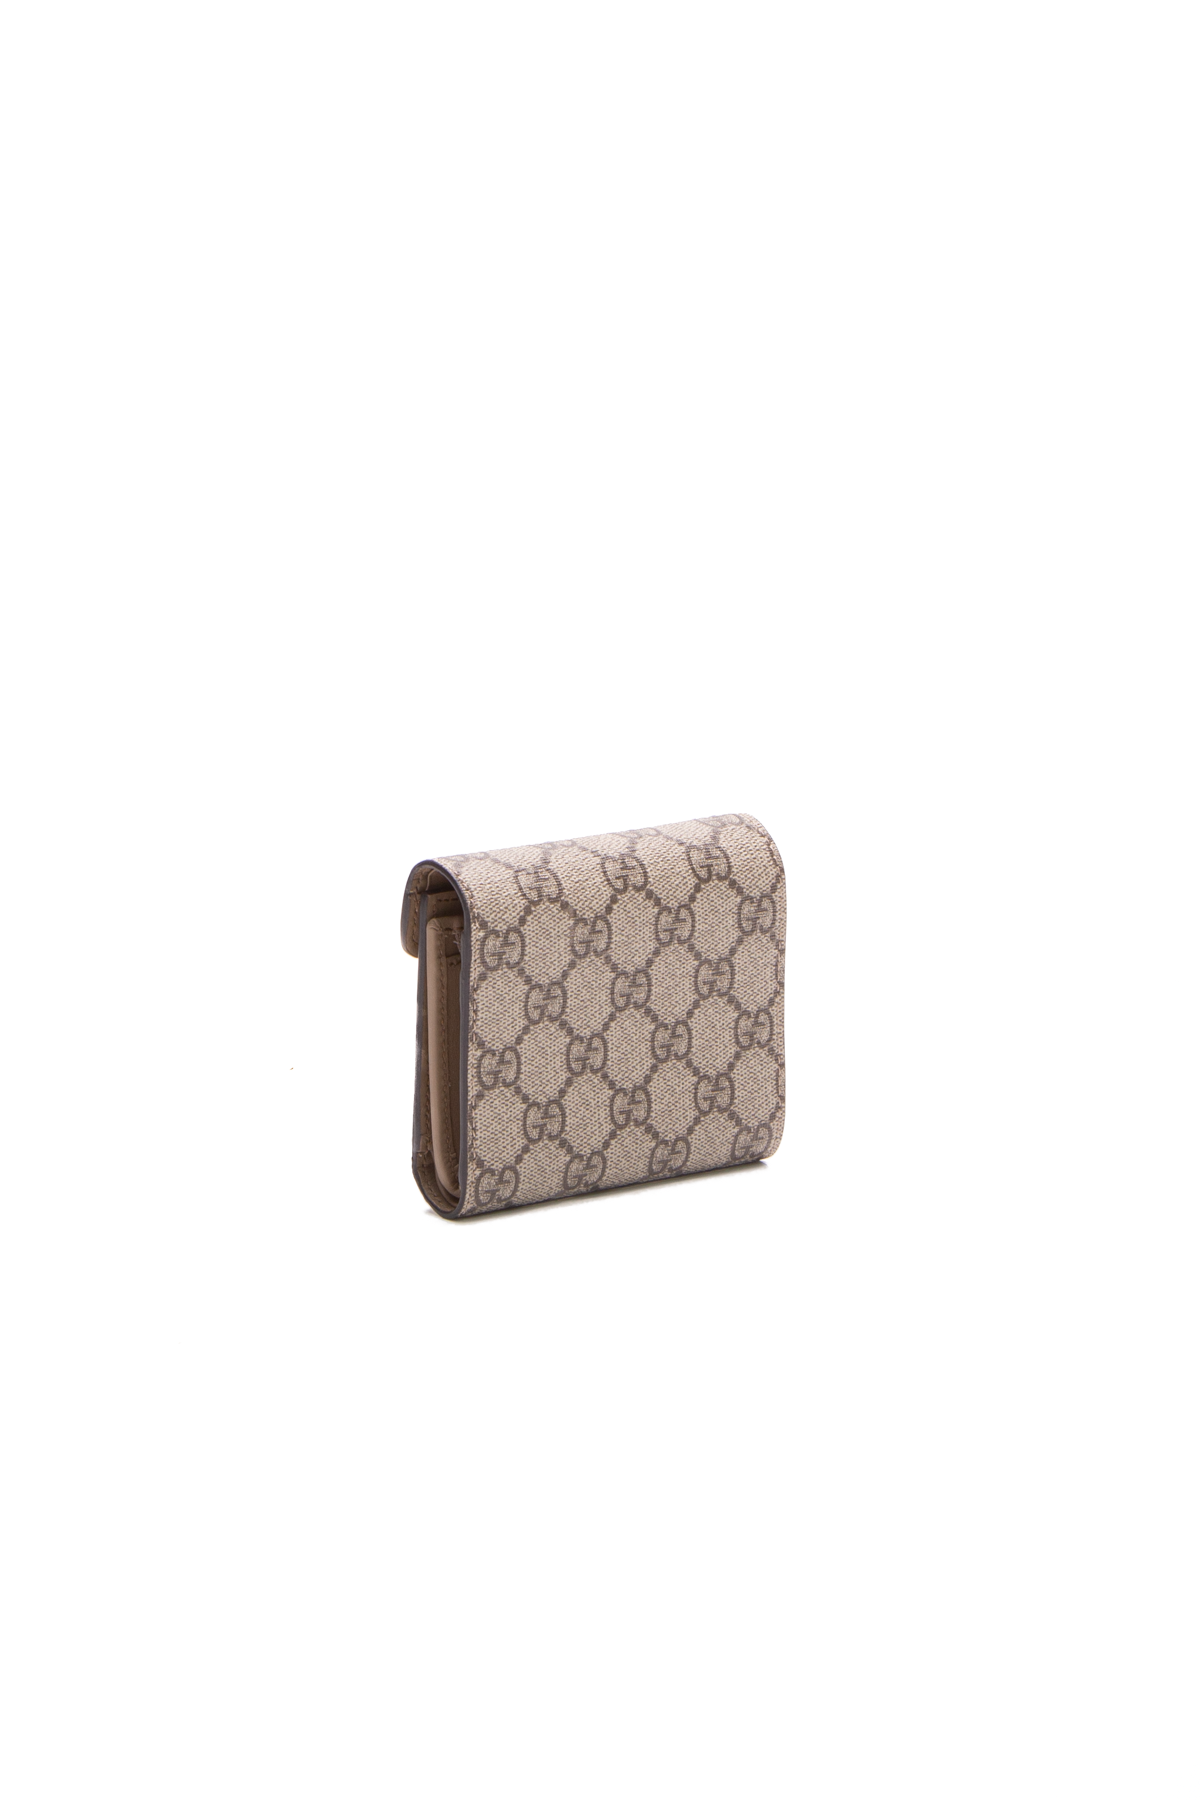 Gucci Dionysus Card Case Wallet